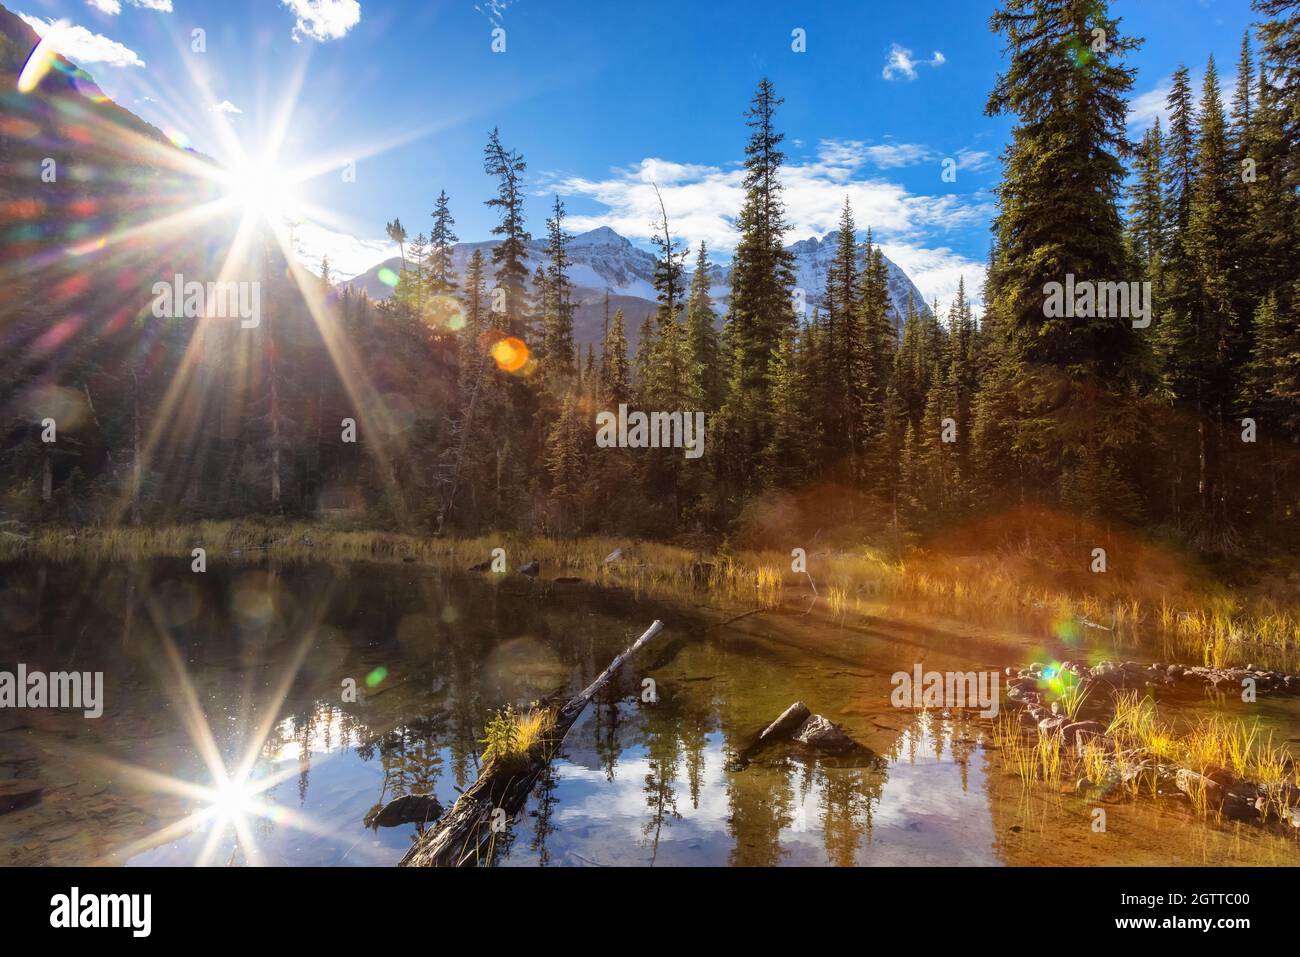 Landschaftlich schöner Blick auf den Glacier Lake mit den kanadischen Rocky Mountains Stockfoto